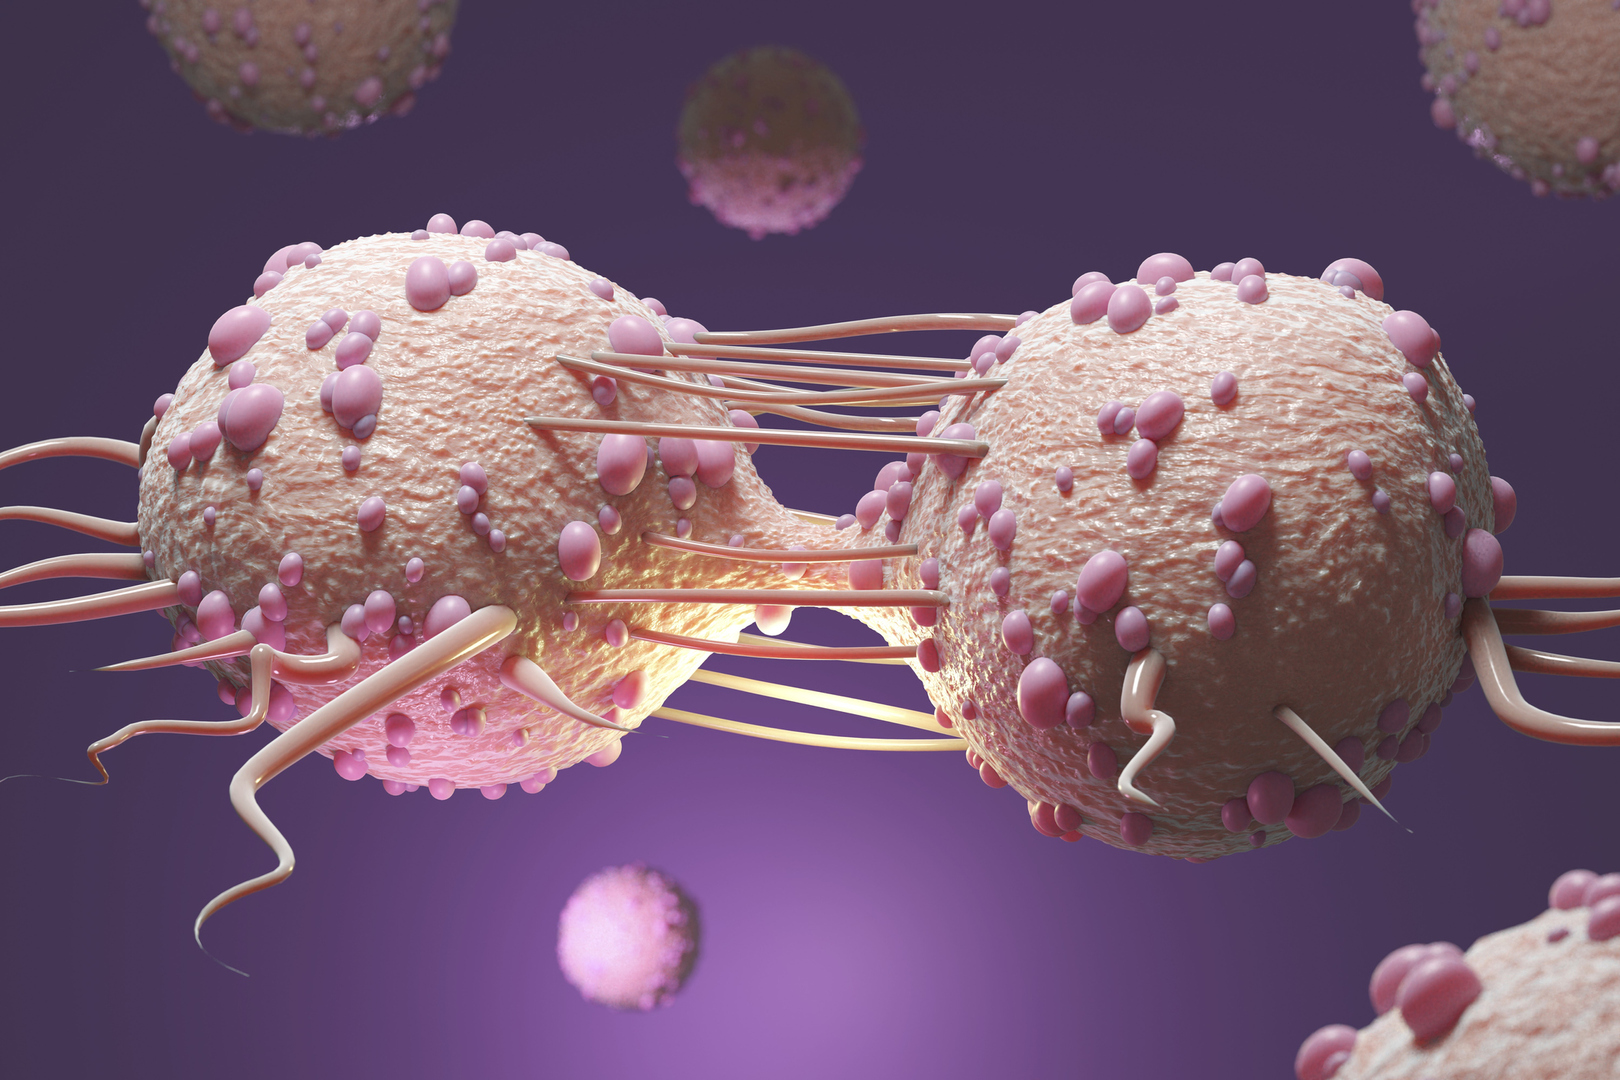 كيف تتذكر الخلايا هويتها وتتجنب الأخطاء التي يمكن أن تسبب السرطان؟